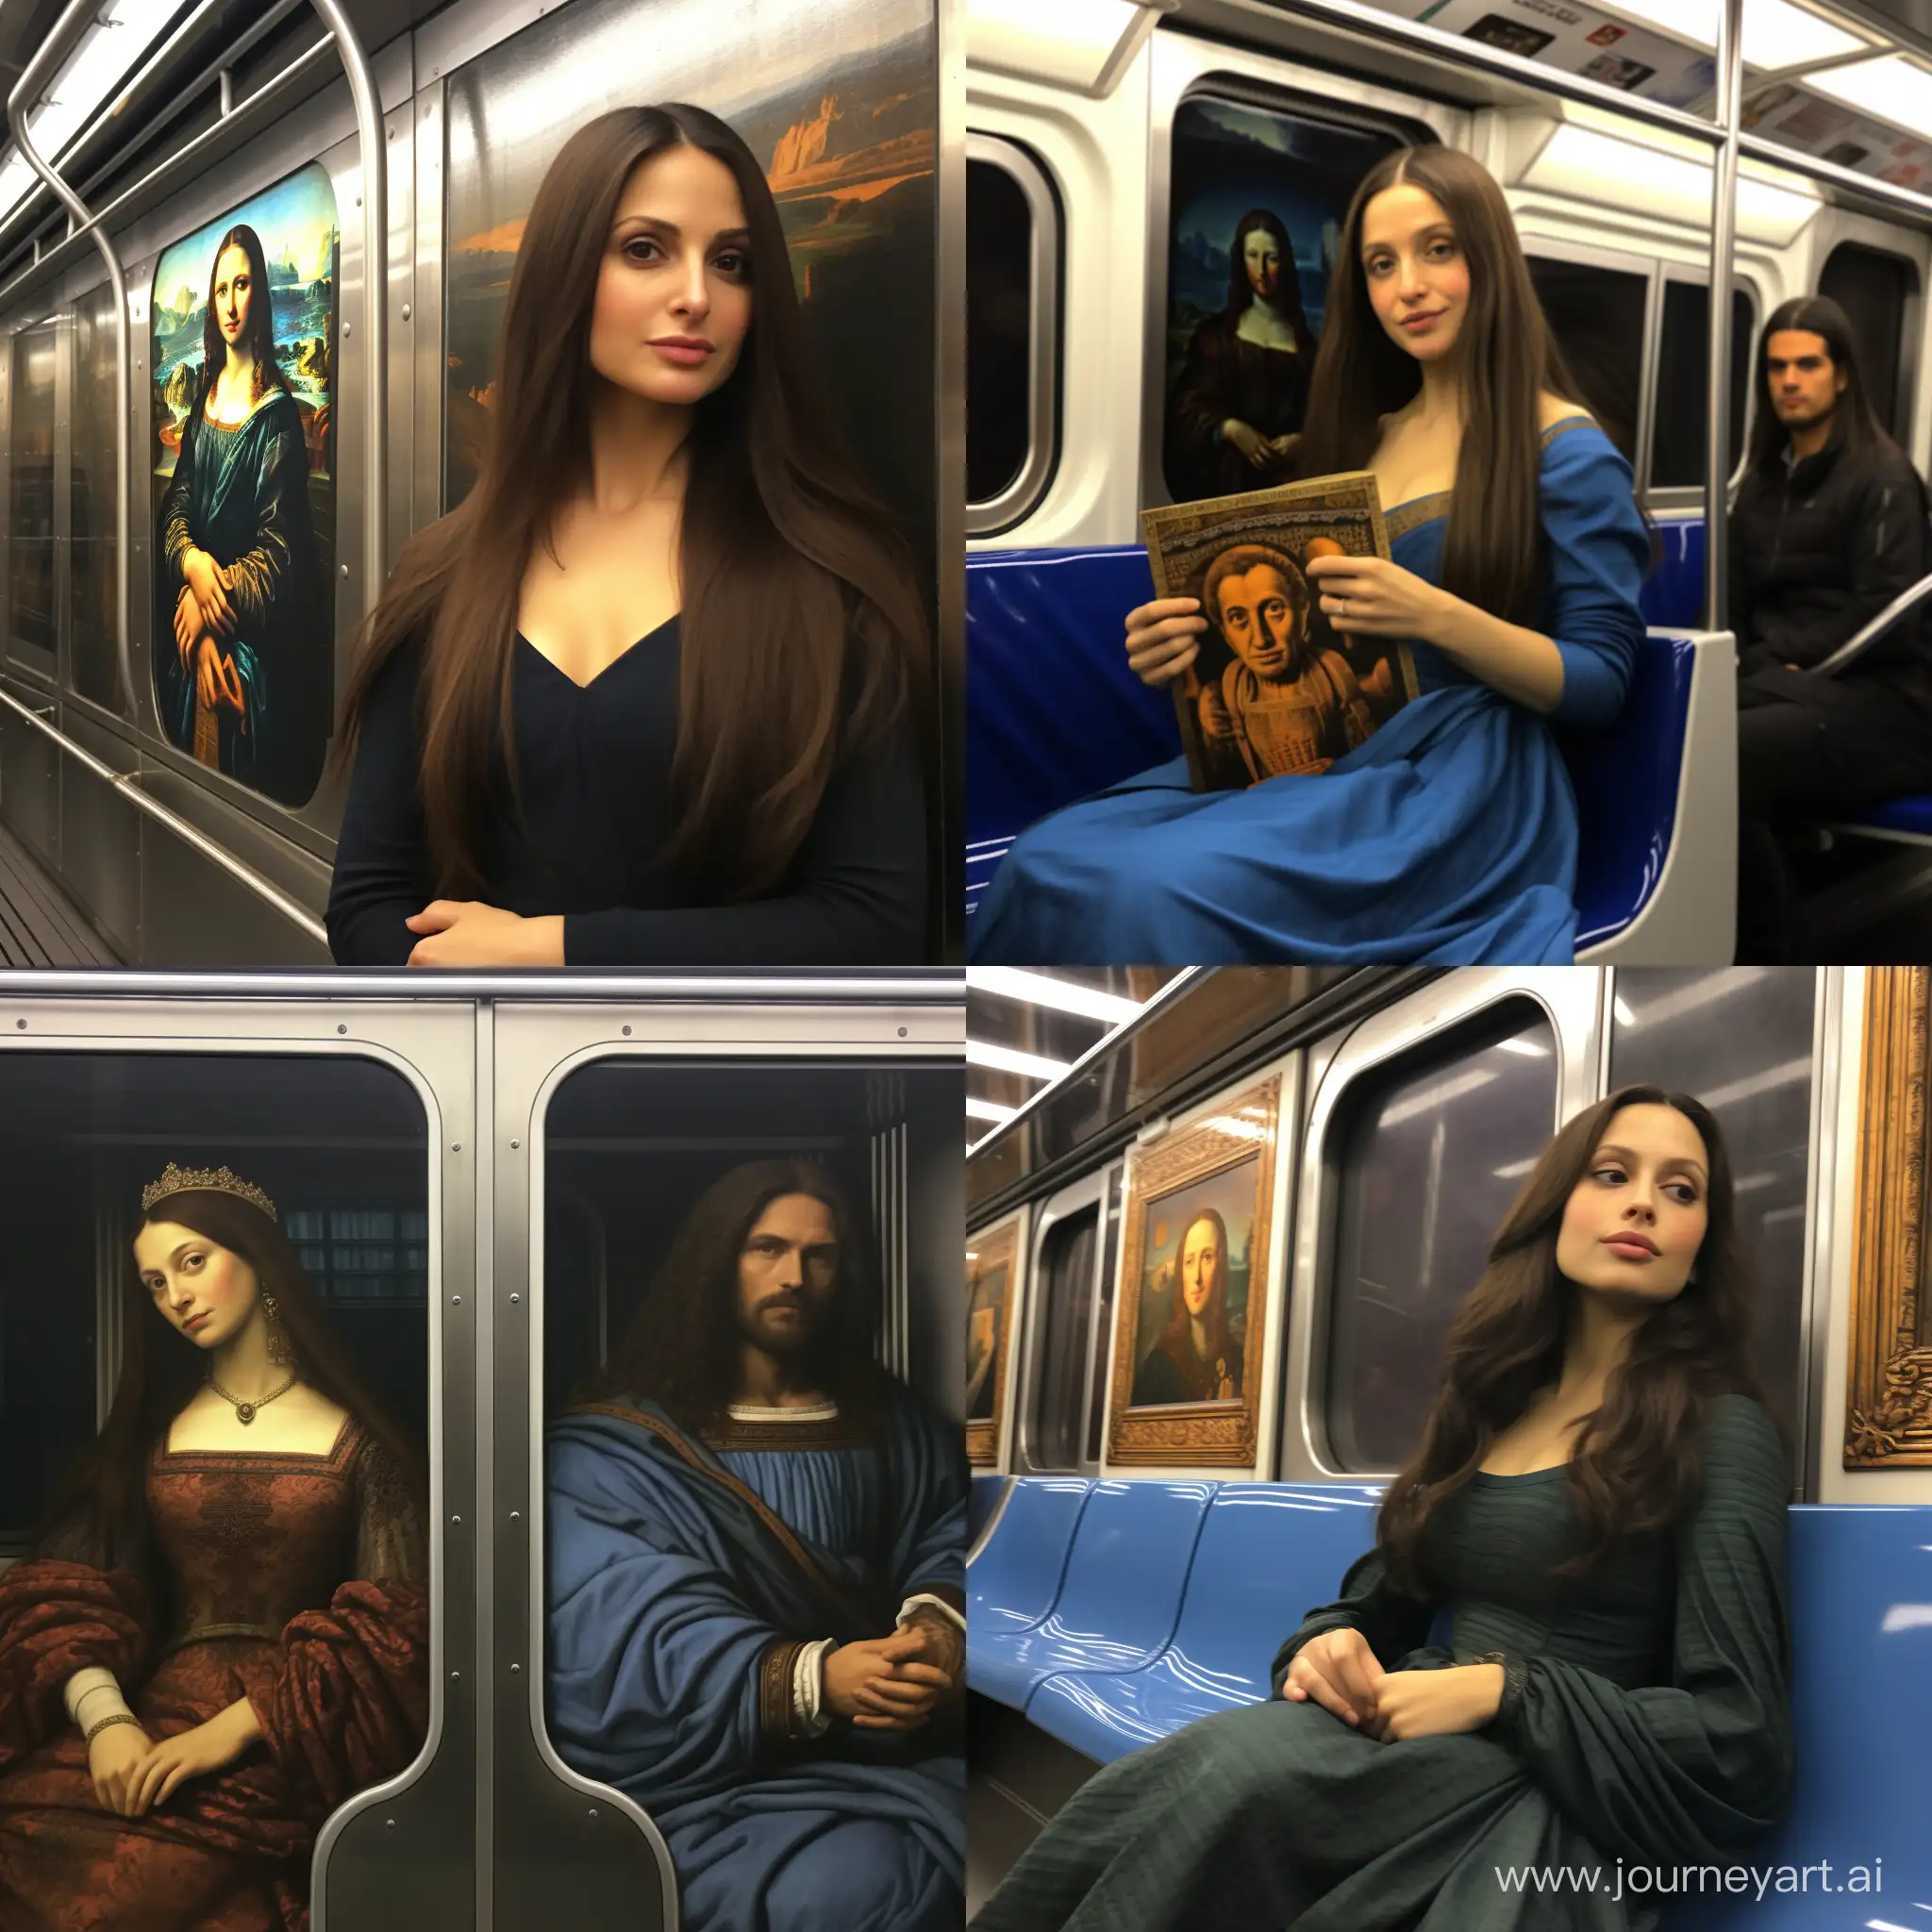 Our time in the New York Subway car [Leonardo Da Vinci] and Gioconda